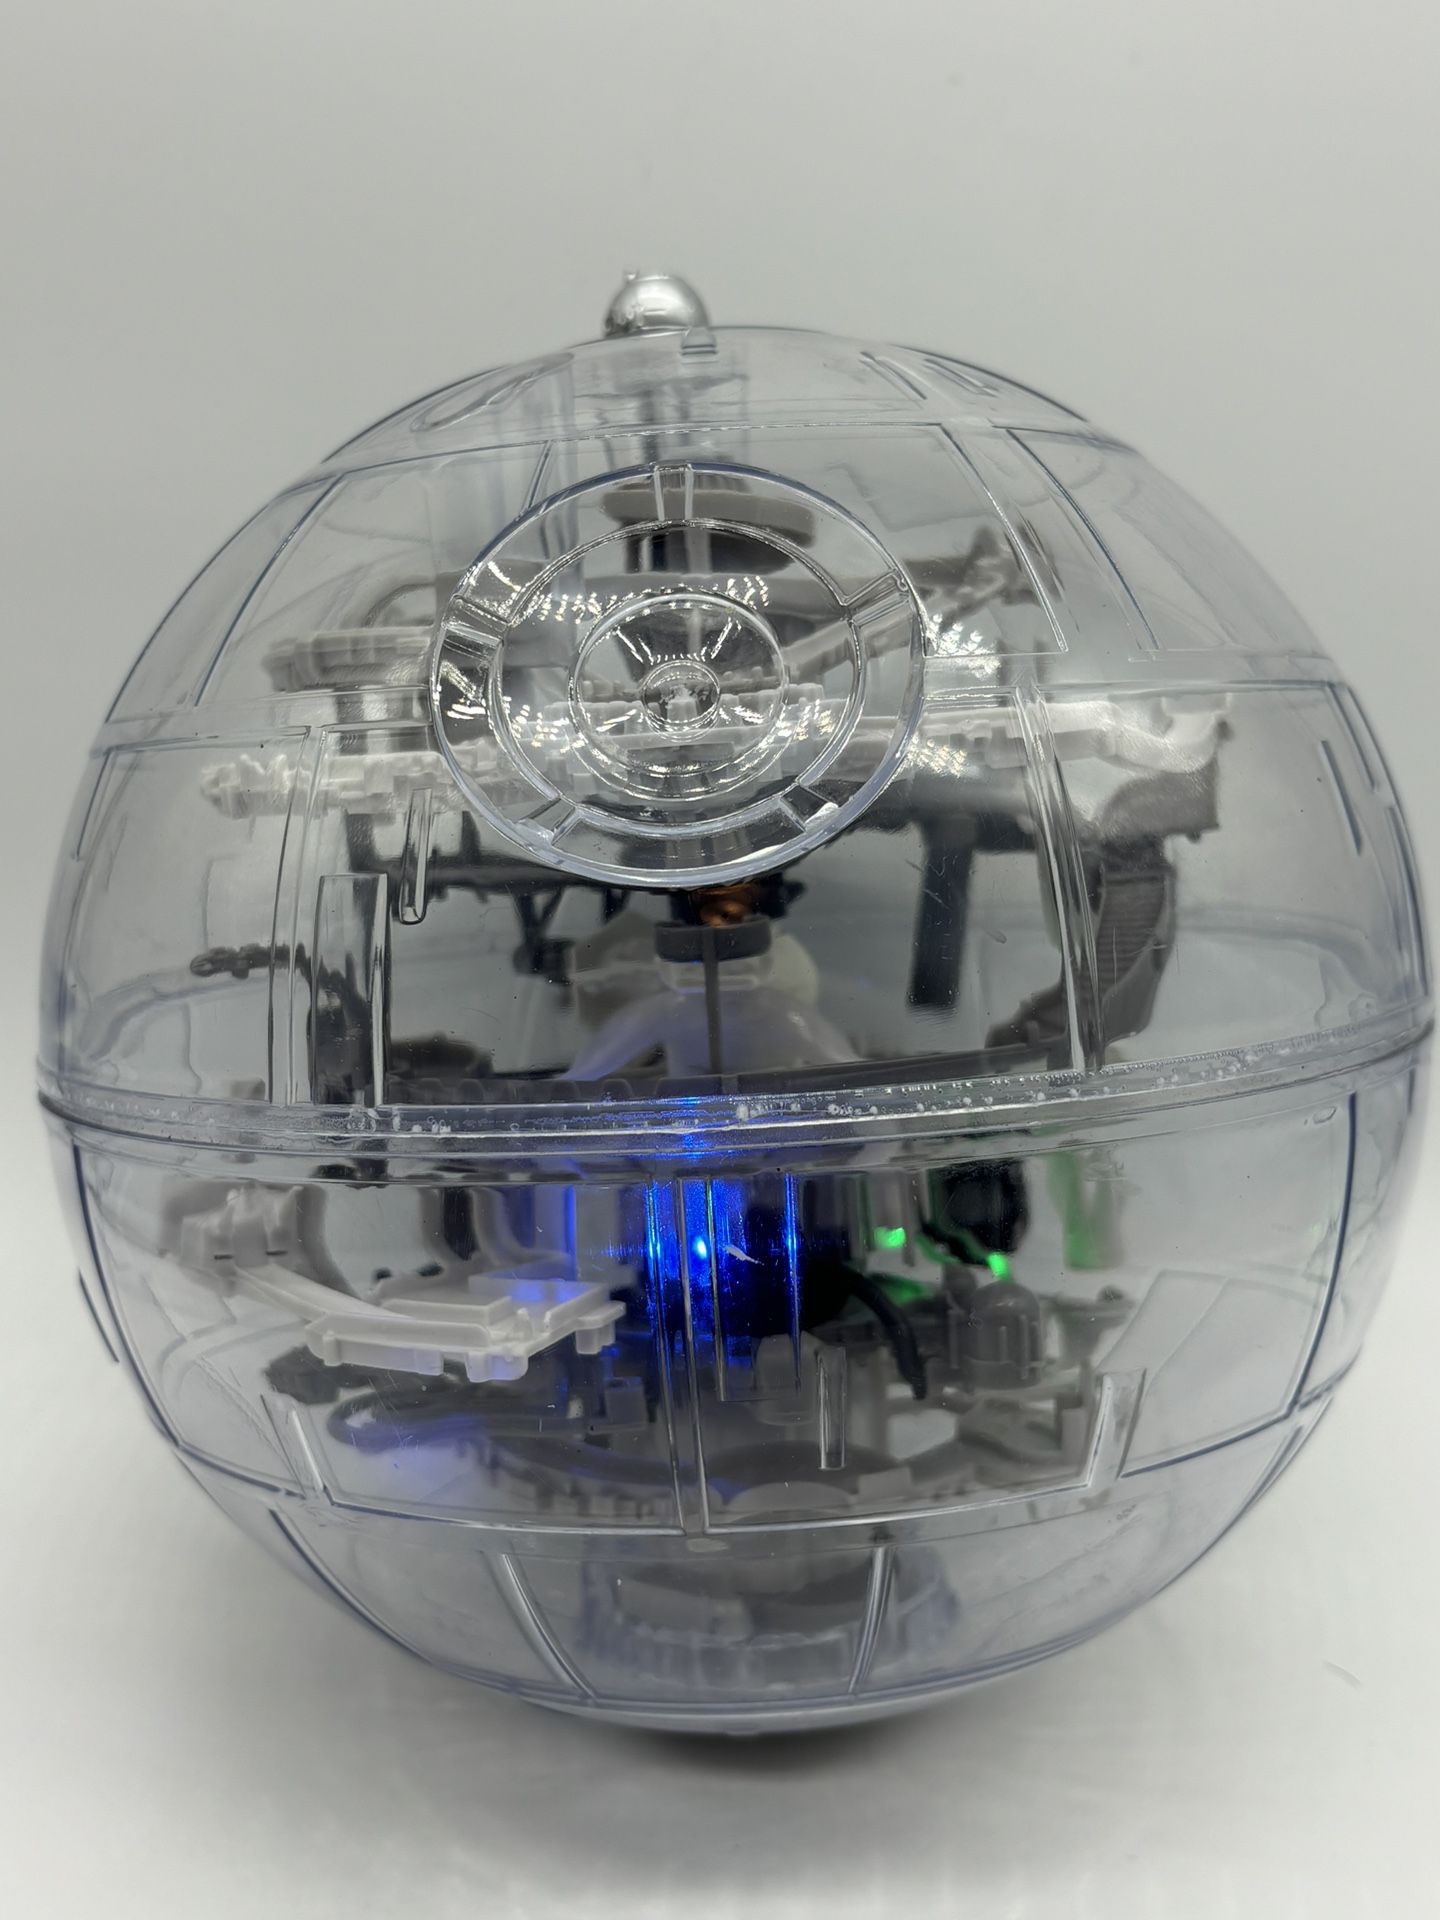 Star Wars Death Star Perplexus 3D Ball Maze Puzzle Game Sphere Light Sound READ